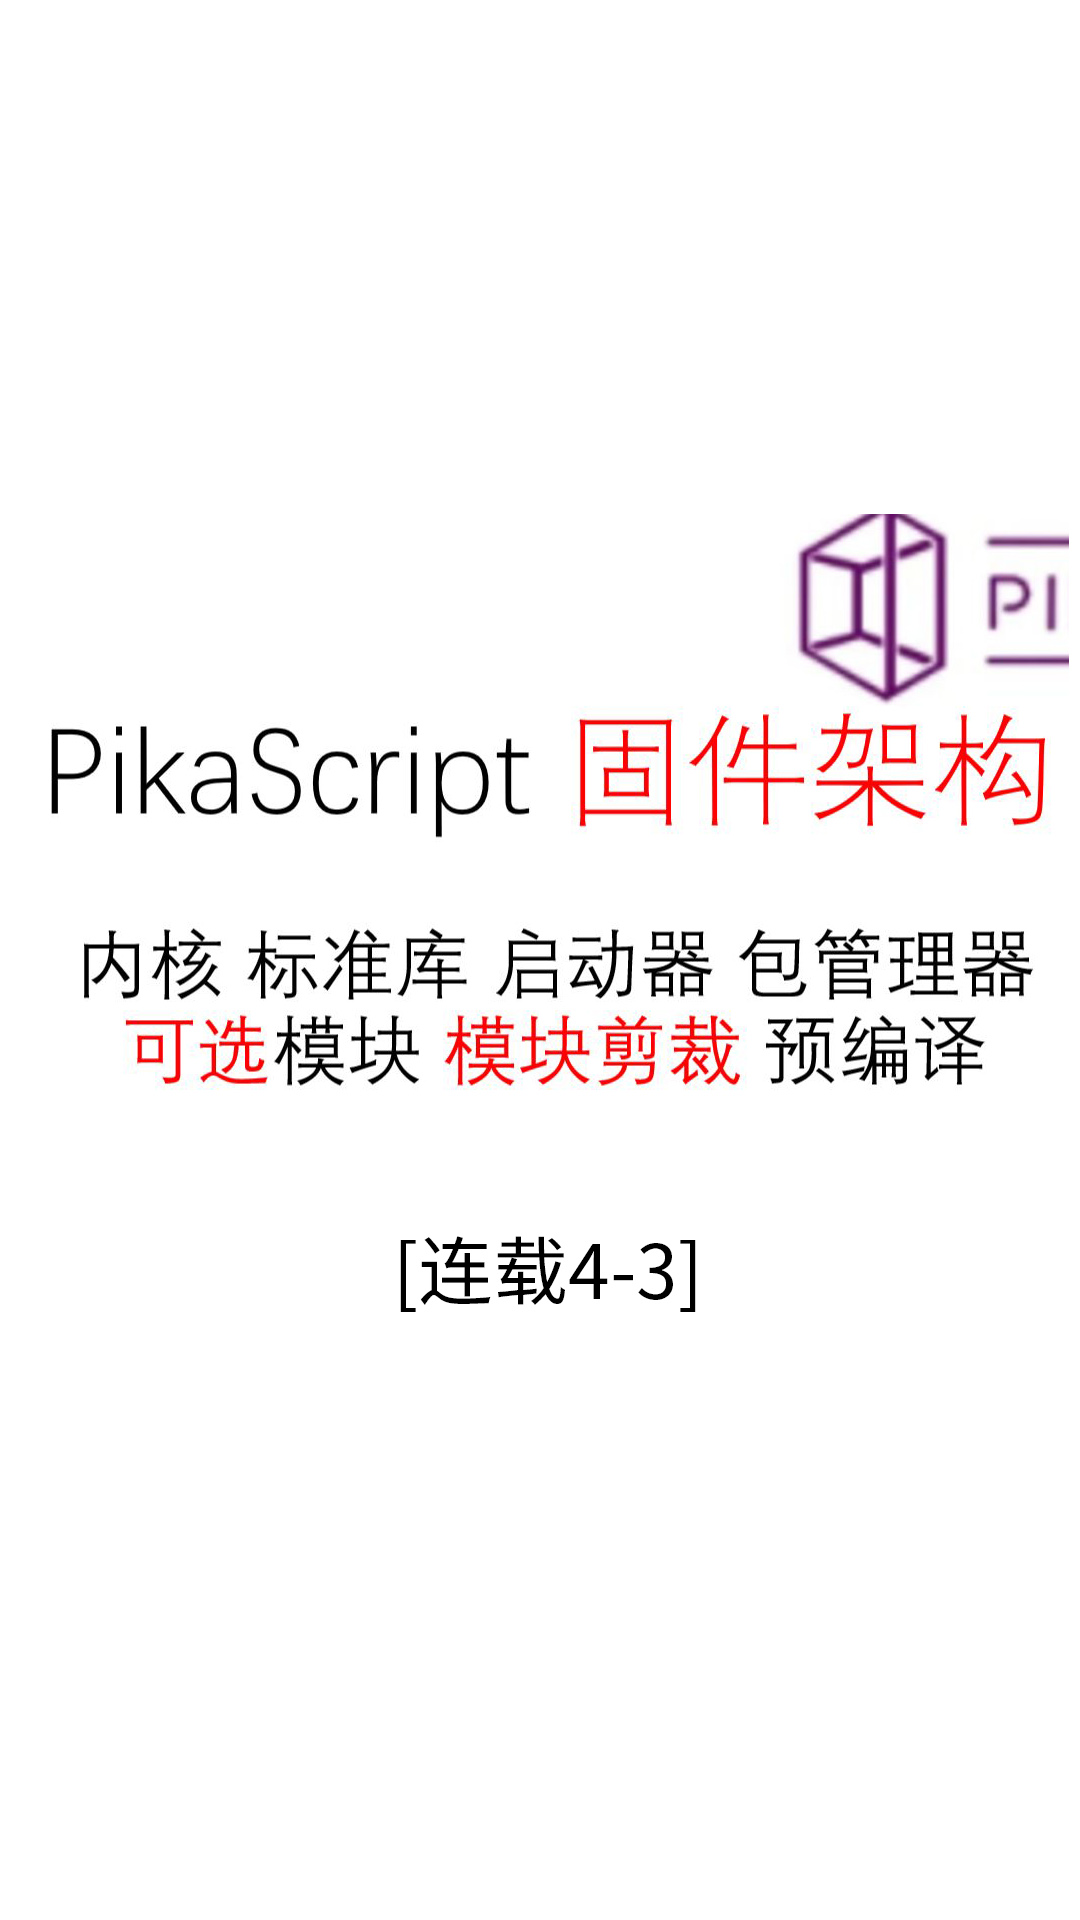 【连载04-3】固件架构--#Pika派开发板 手把手单片机python编程